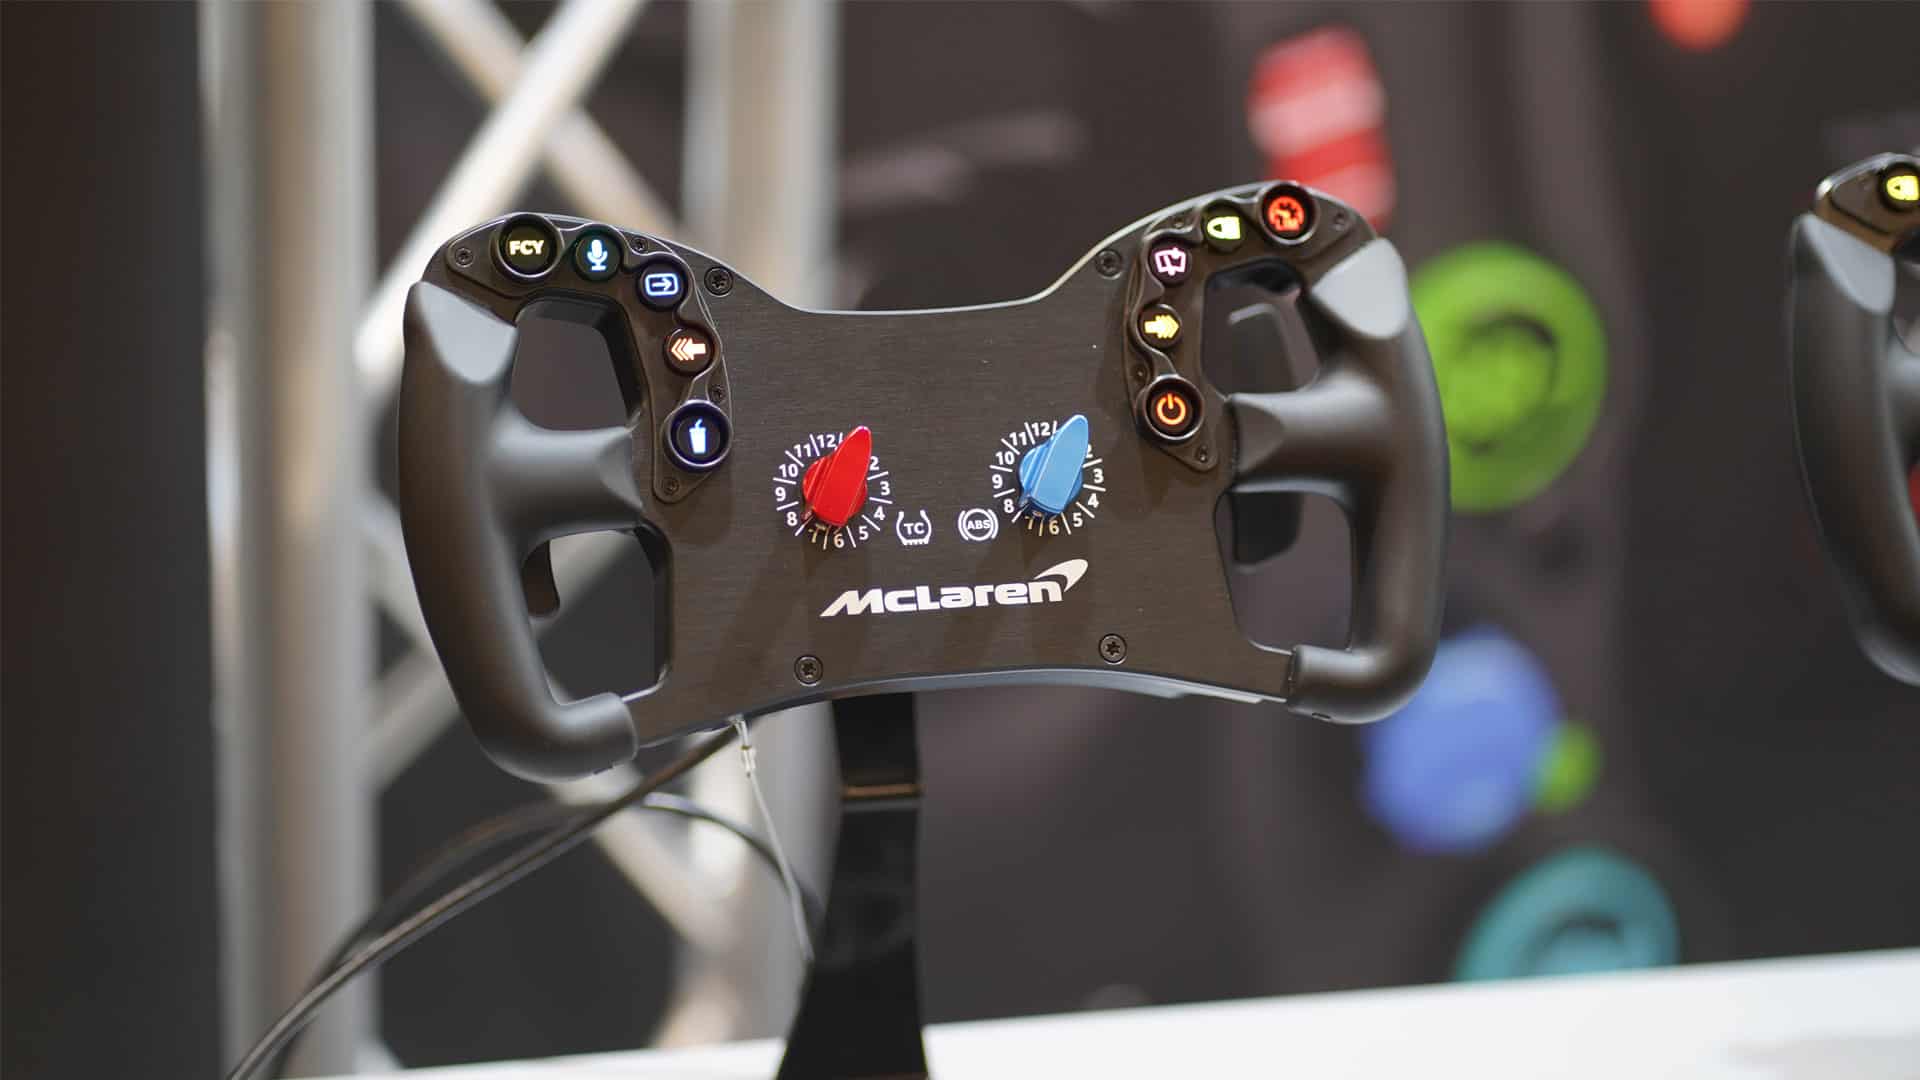 Ascher Racing's new sim racing wheel used in real-world McLaren Artura GT4 race car